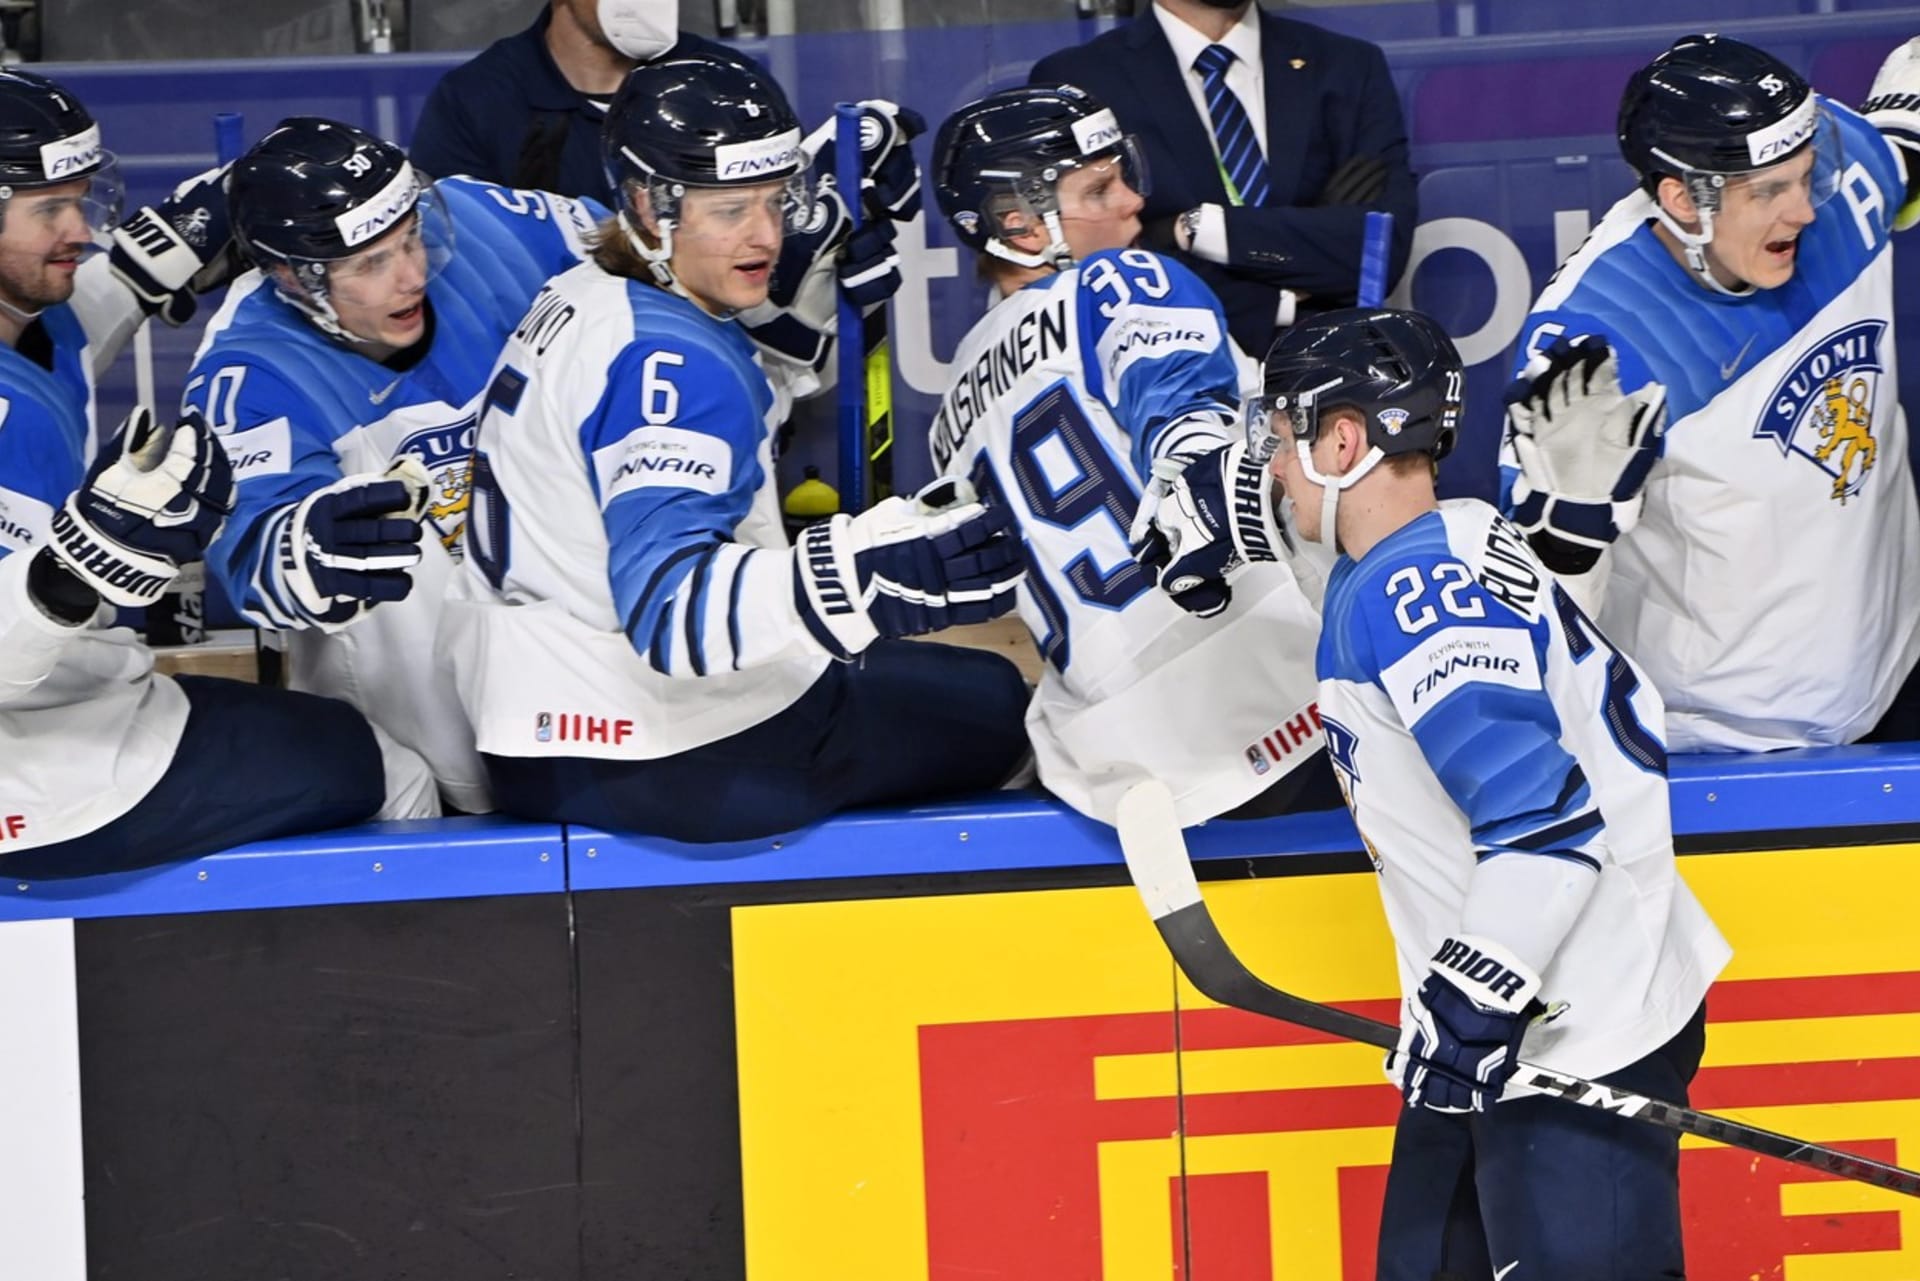 Finští hokejoví odborníci považují Čechy za nejhoršího soupeře pro čtvrtfinálový duel na letošním mistrovství světa.